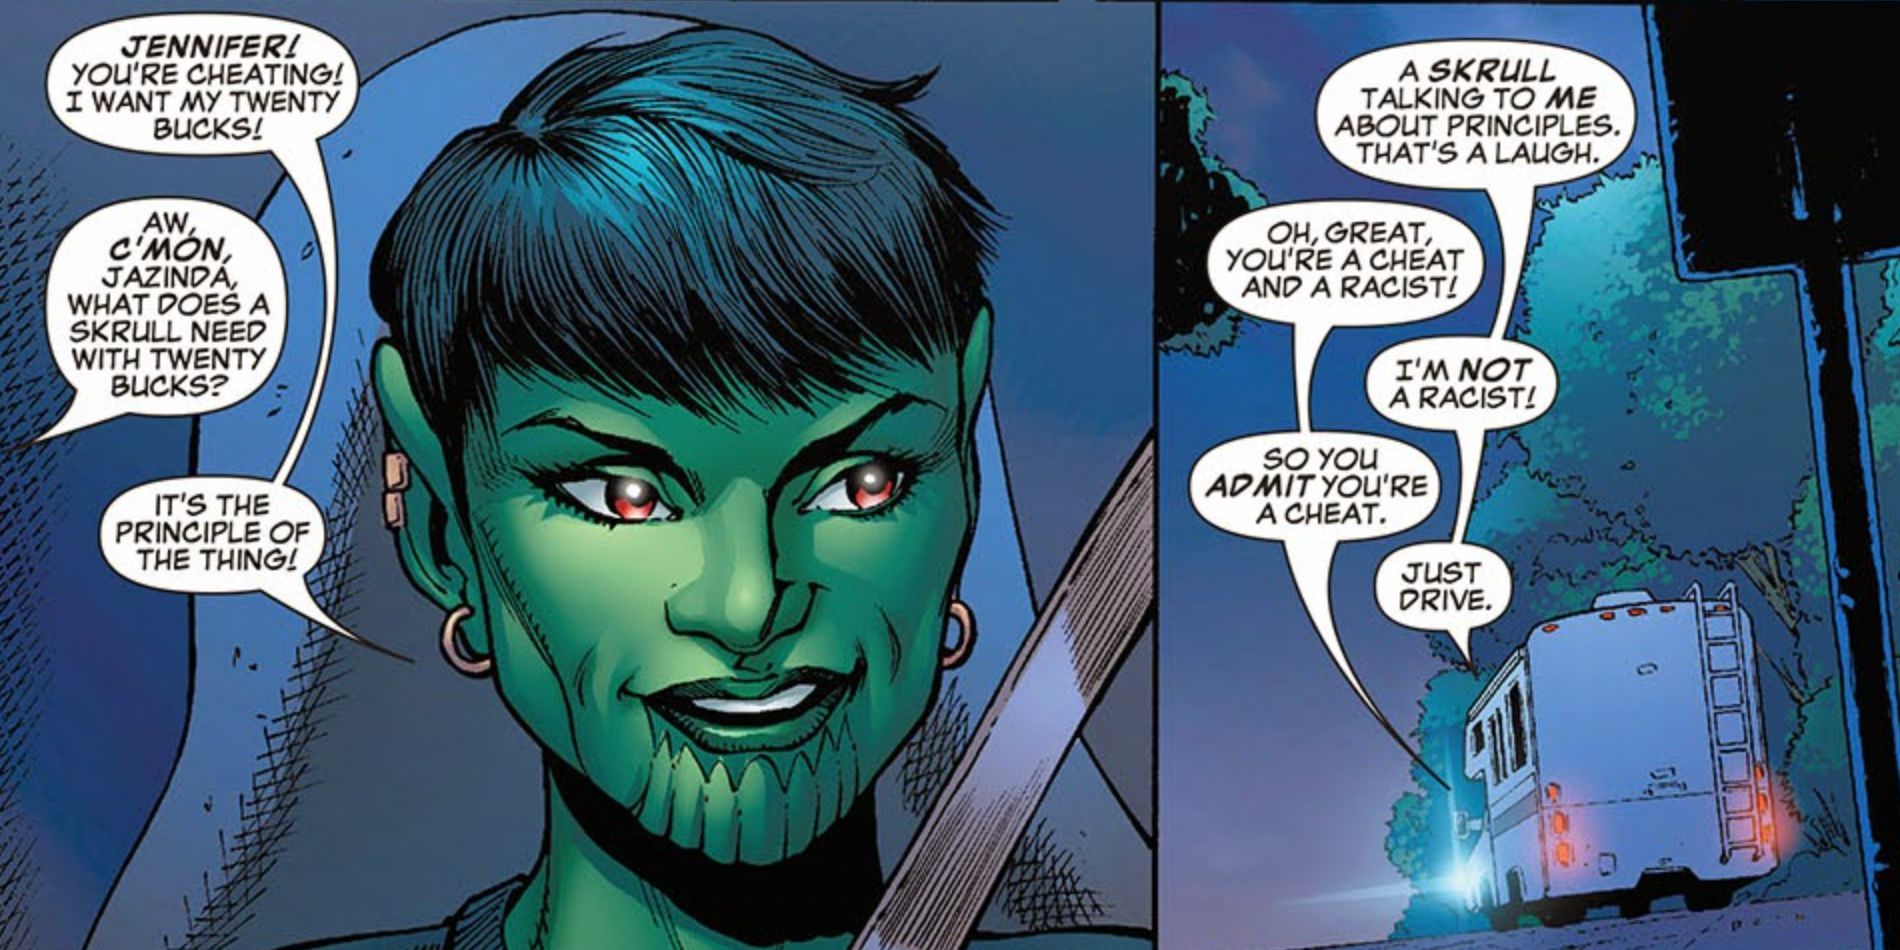 Jazinda talks to Jen Walters on a road trip in Marvel comics